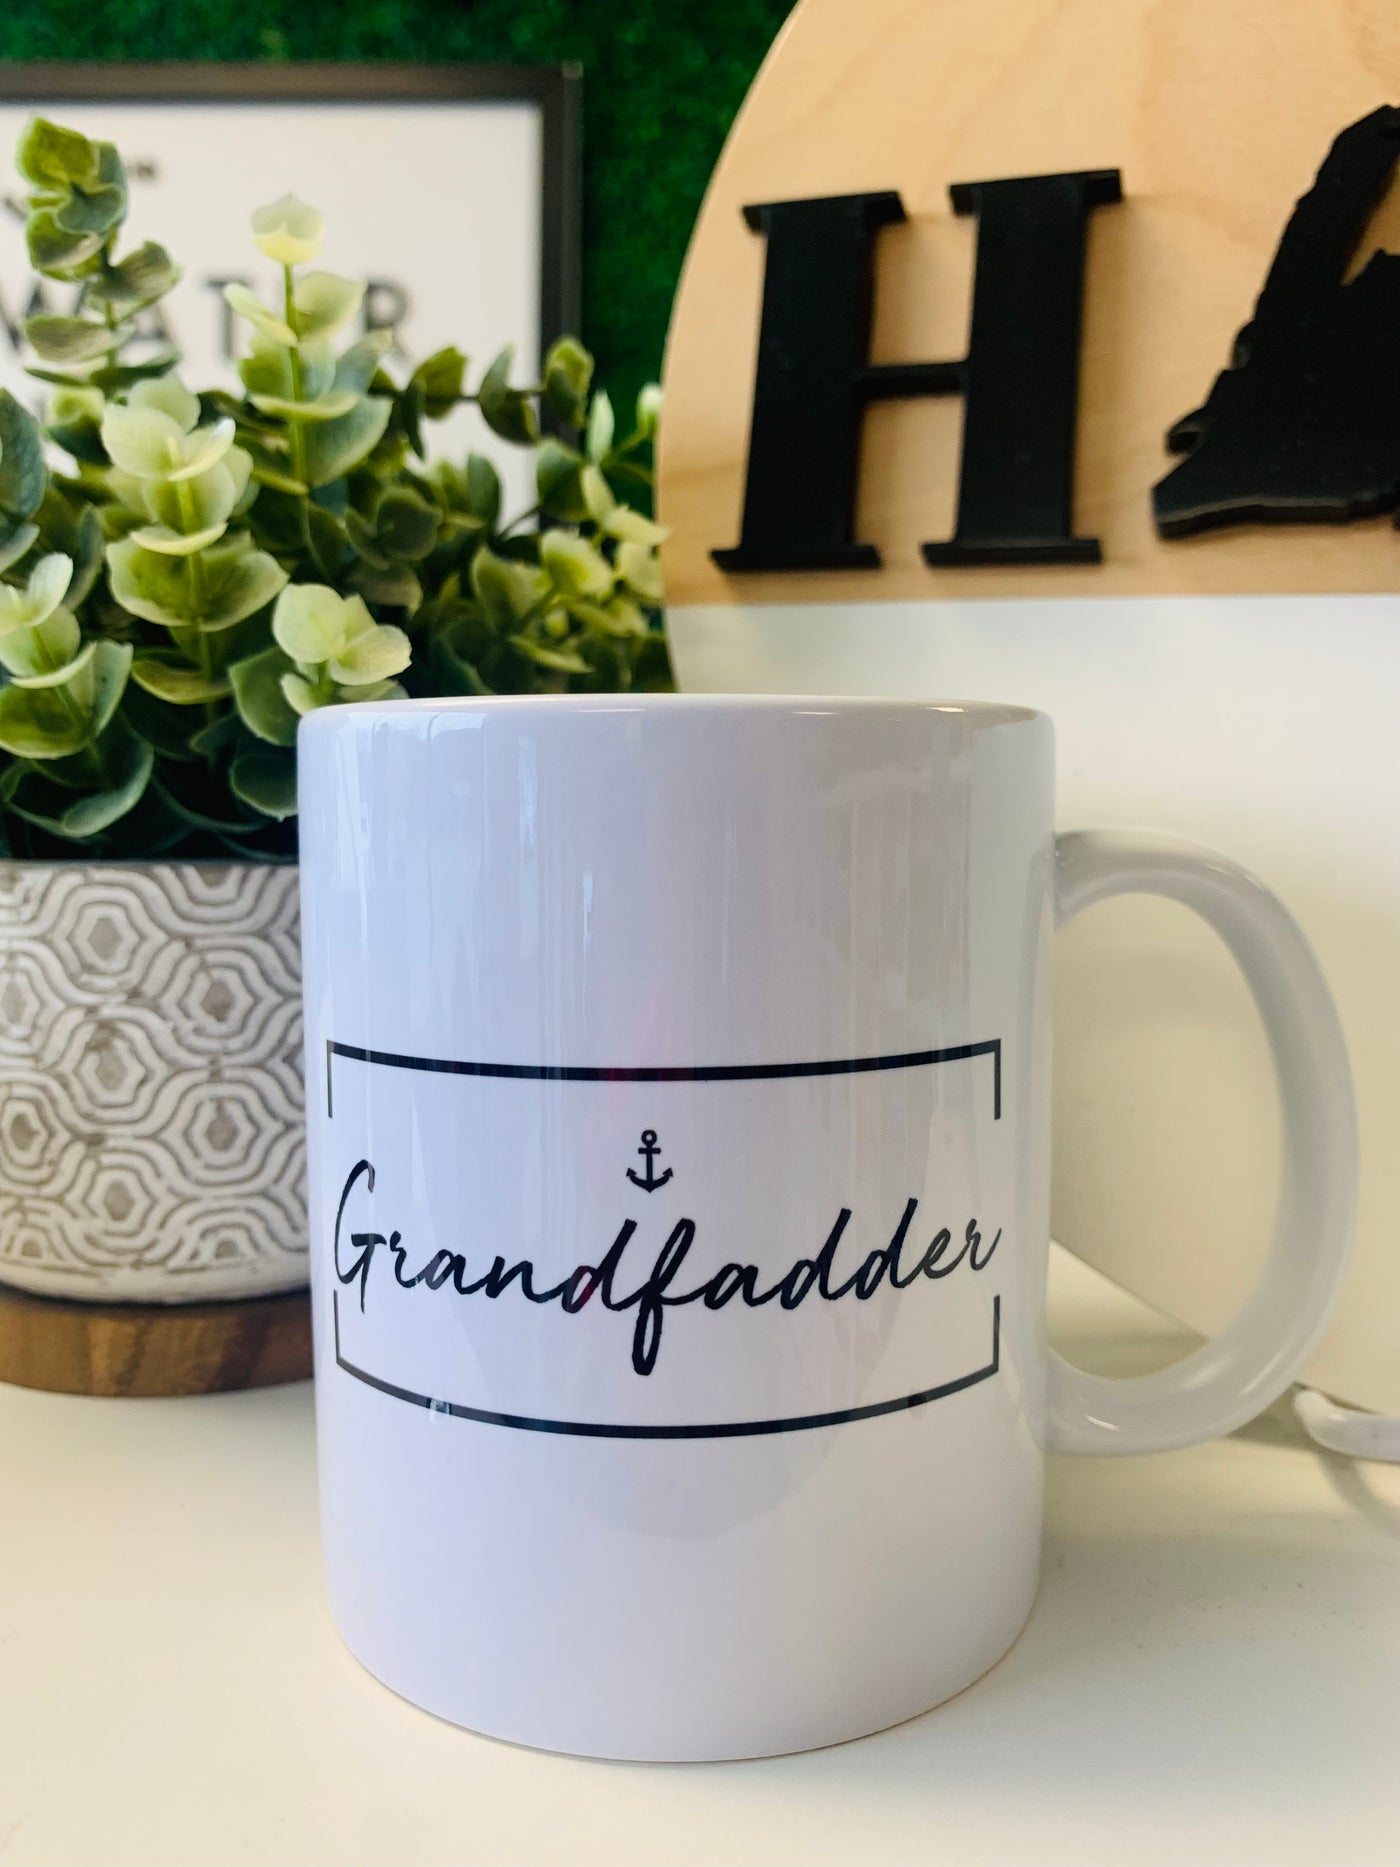 "Grandfadder" Mug